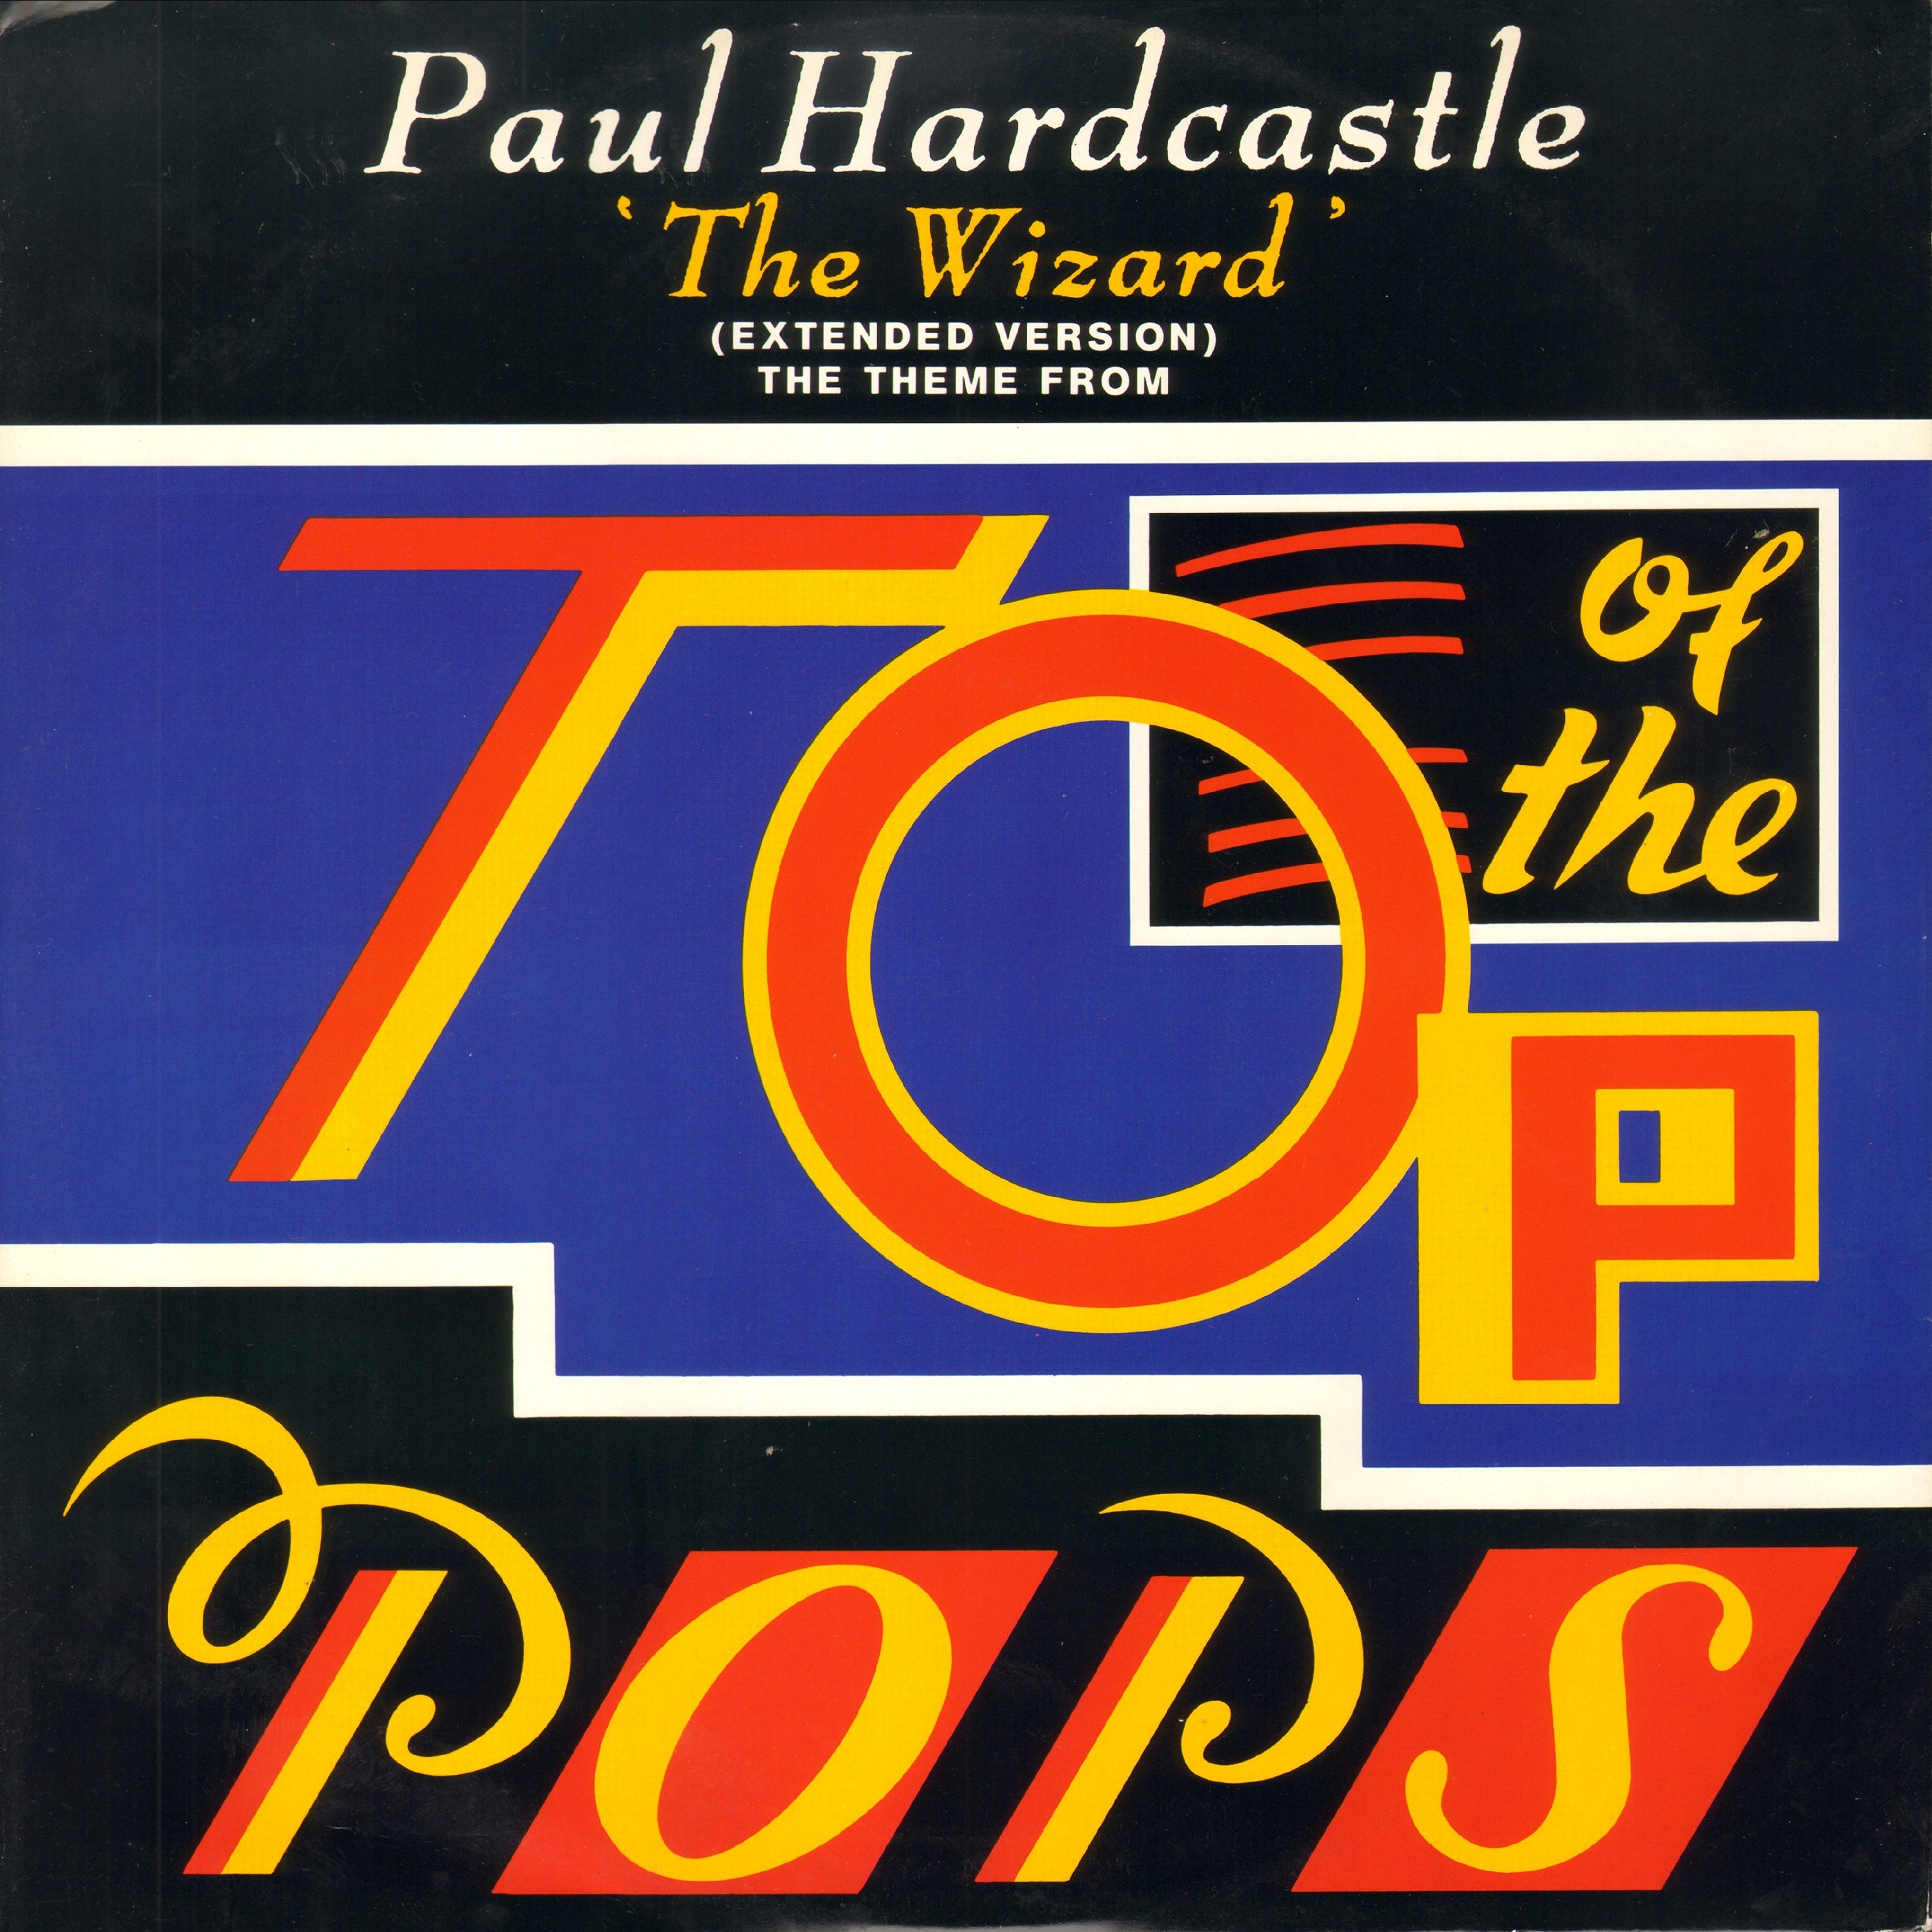 Paul hardcastle. Paul Hardcastle Hardcastle 1. Paul Hardcastle - Hardcastle 2. Paul Hardcastle фото альбомов.